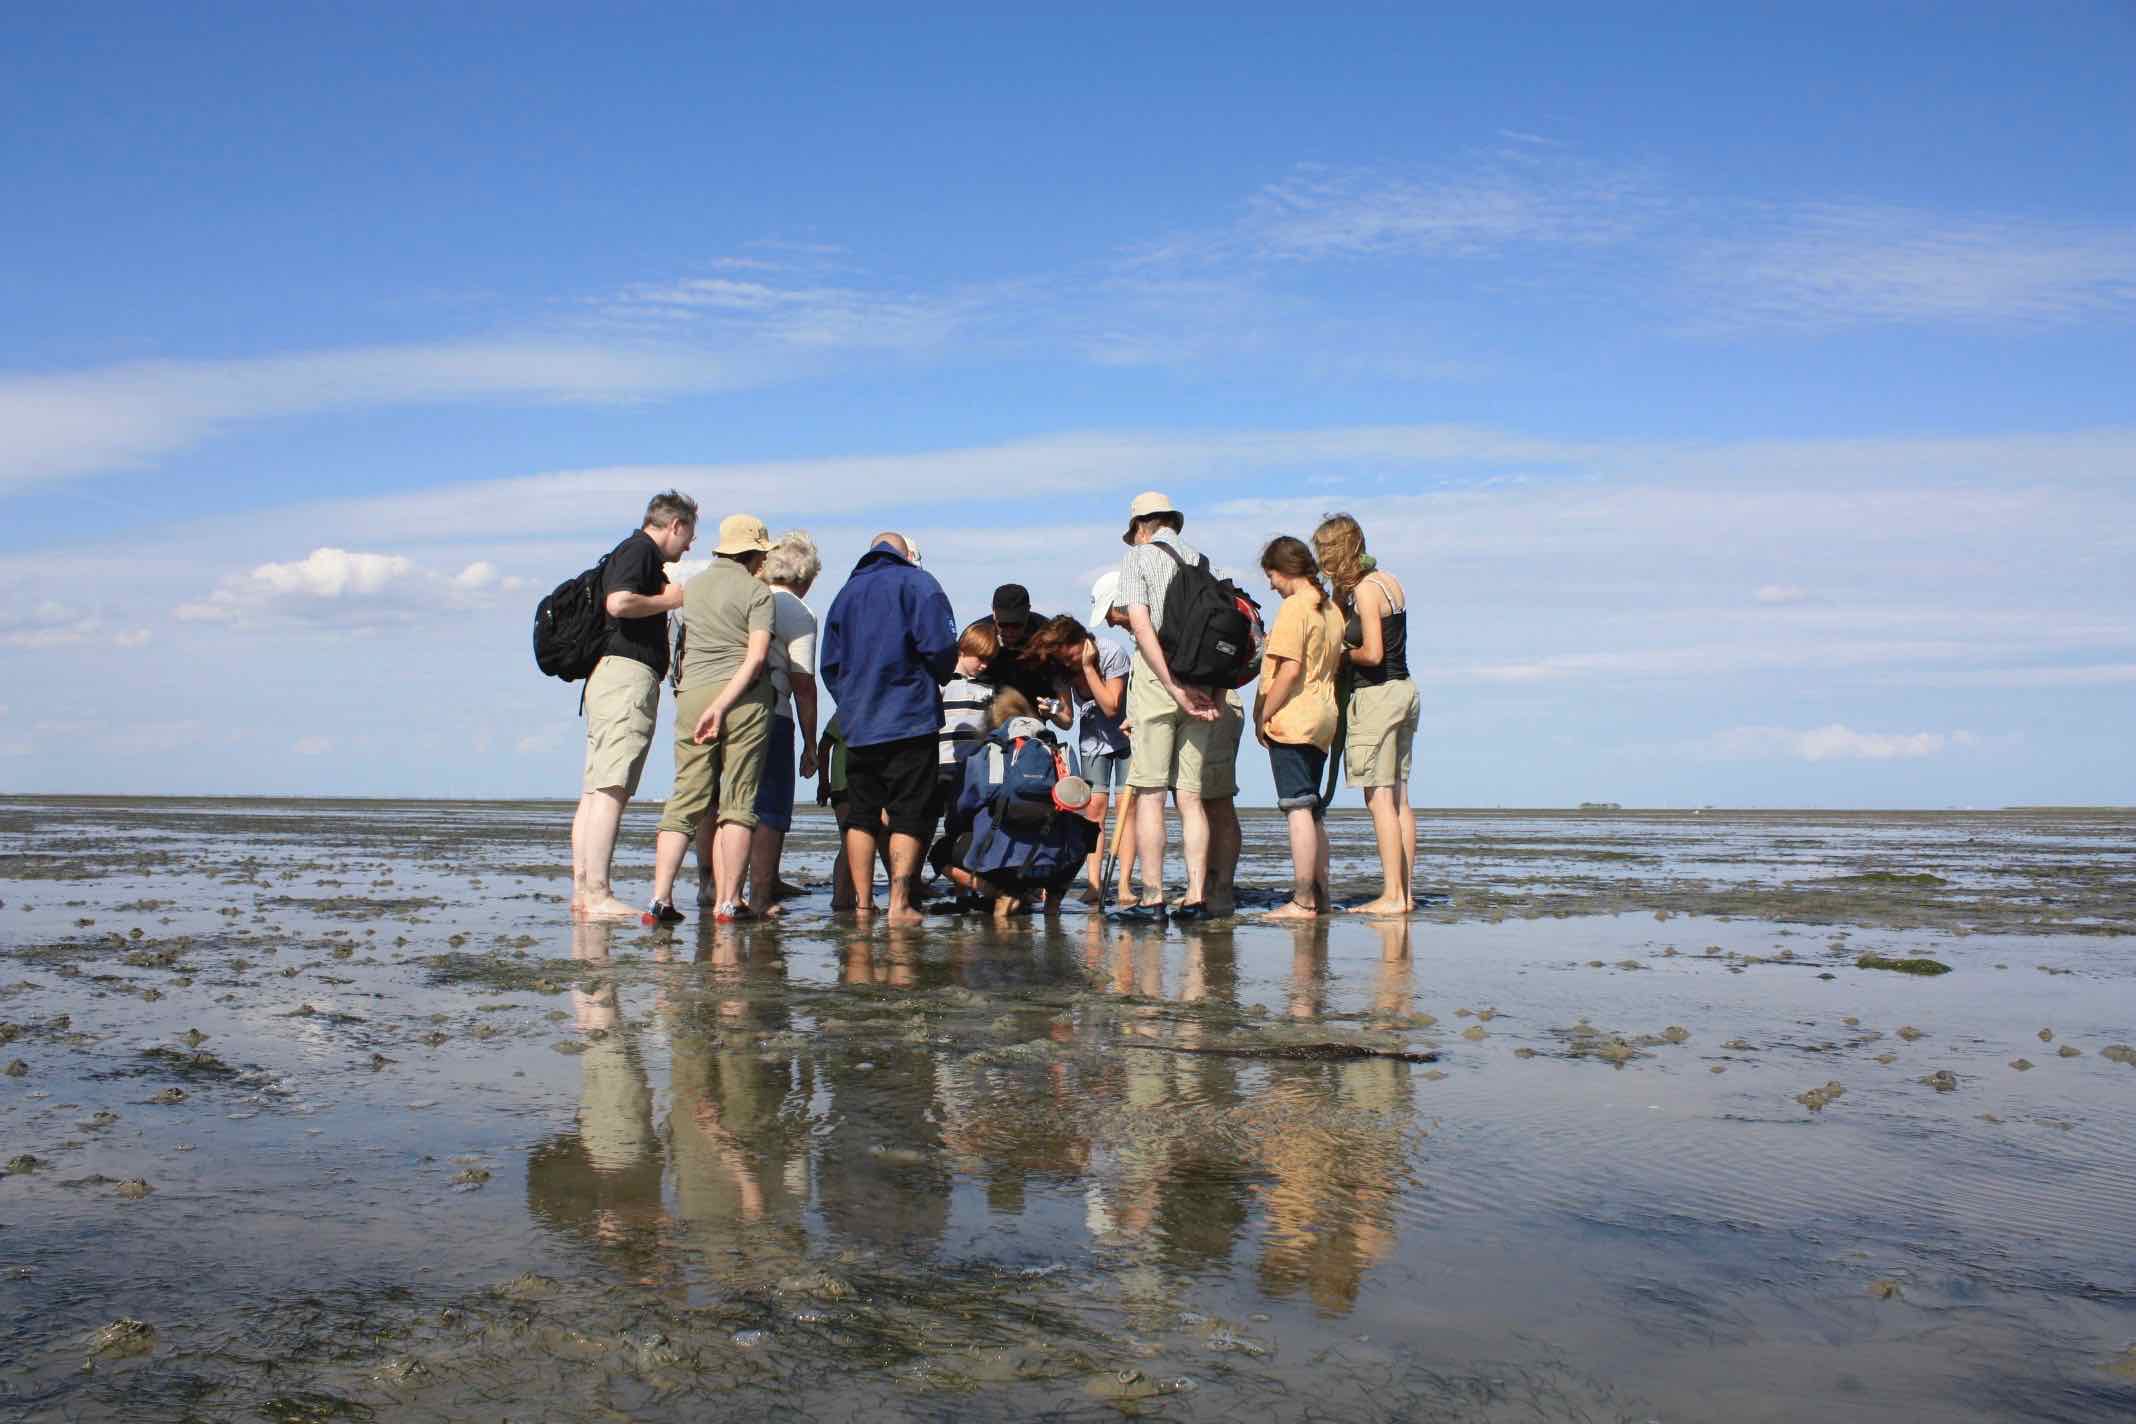 Wir entdecken auf der rund 2-stündigen Tour das Watt mit seinen vielen Bewohner und erfahren, wie sich Wattwurm, Strandkrabbe & Co an das Leben in diesem einzigartigen Lebensraum angepasst haben.